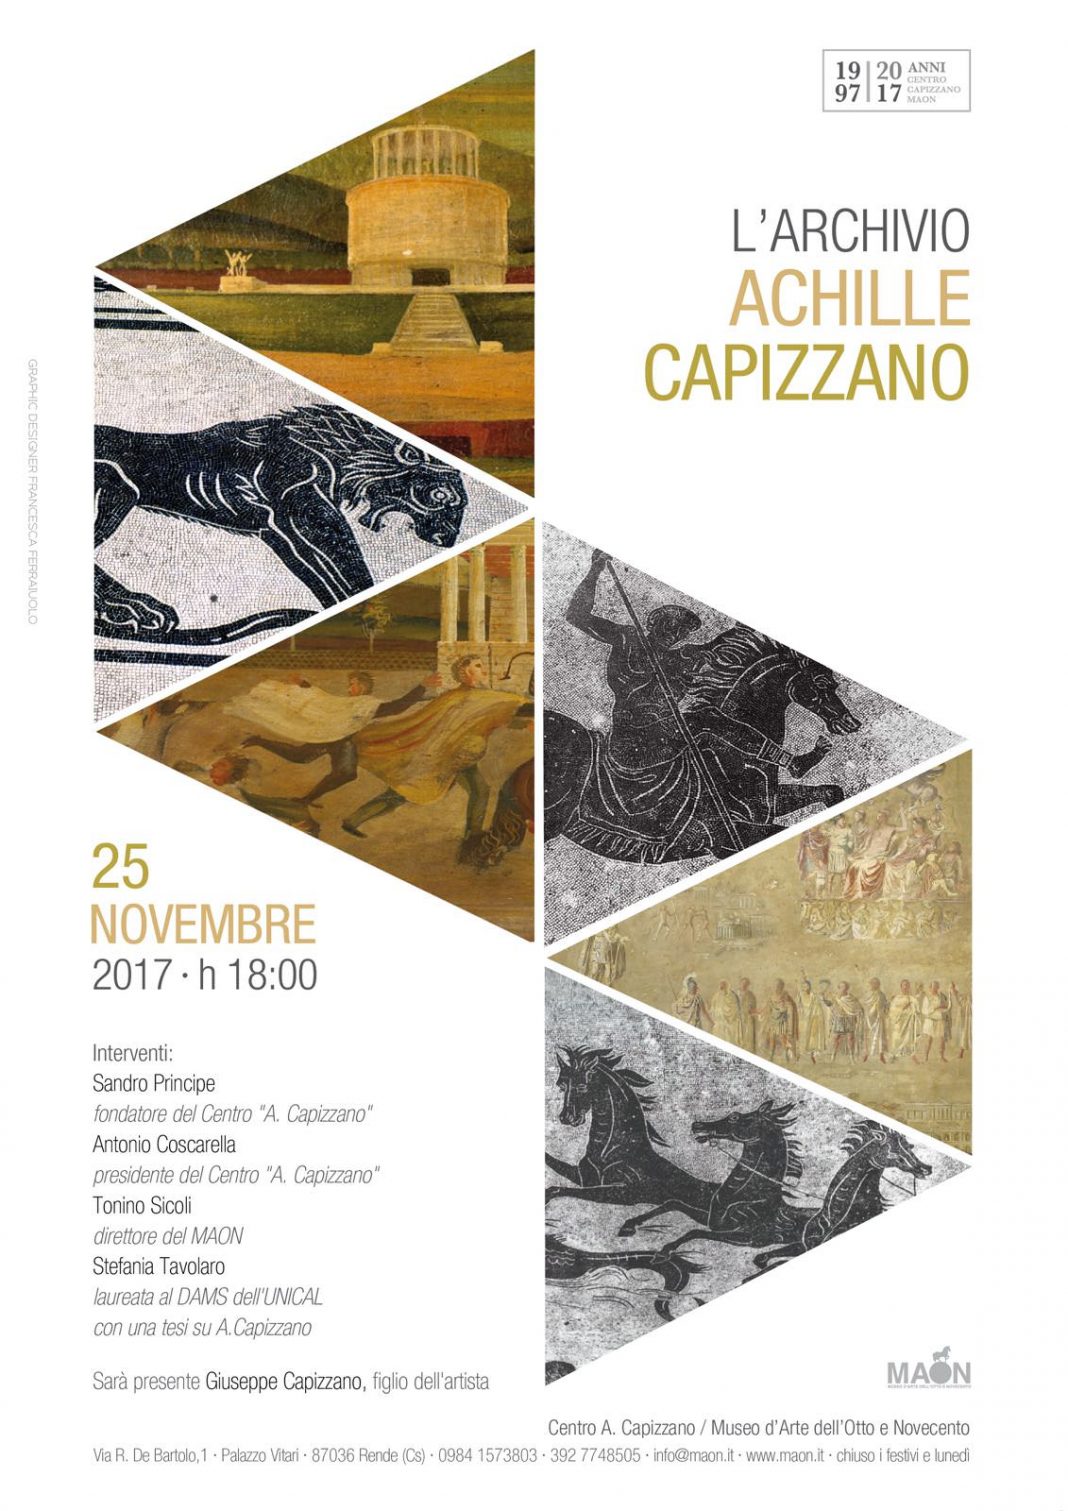 L’Archivio Achille Capizzanohttps://www.exibart.com/repository/media/eventi/2017/11/l’archivio-achille-capizzano-1068x1511.jpg